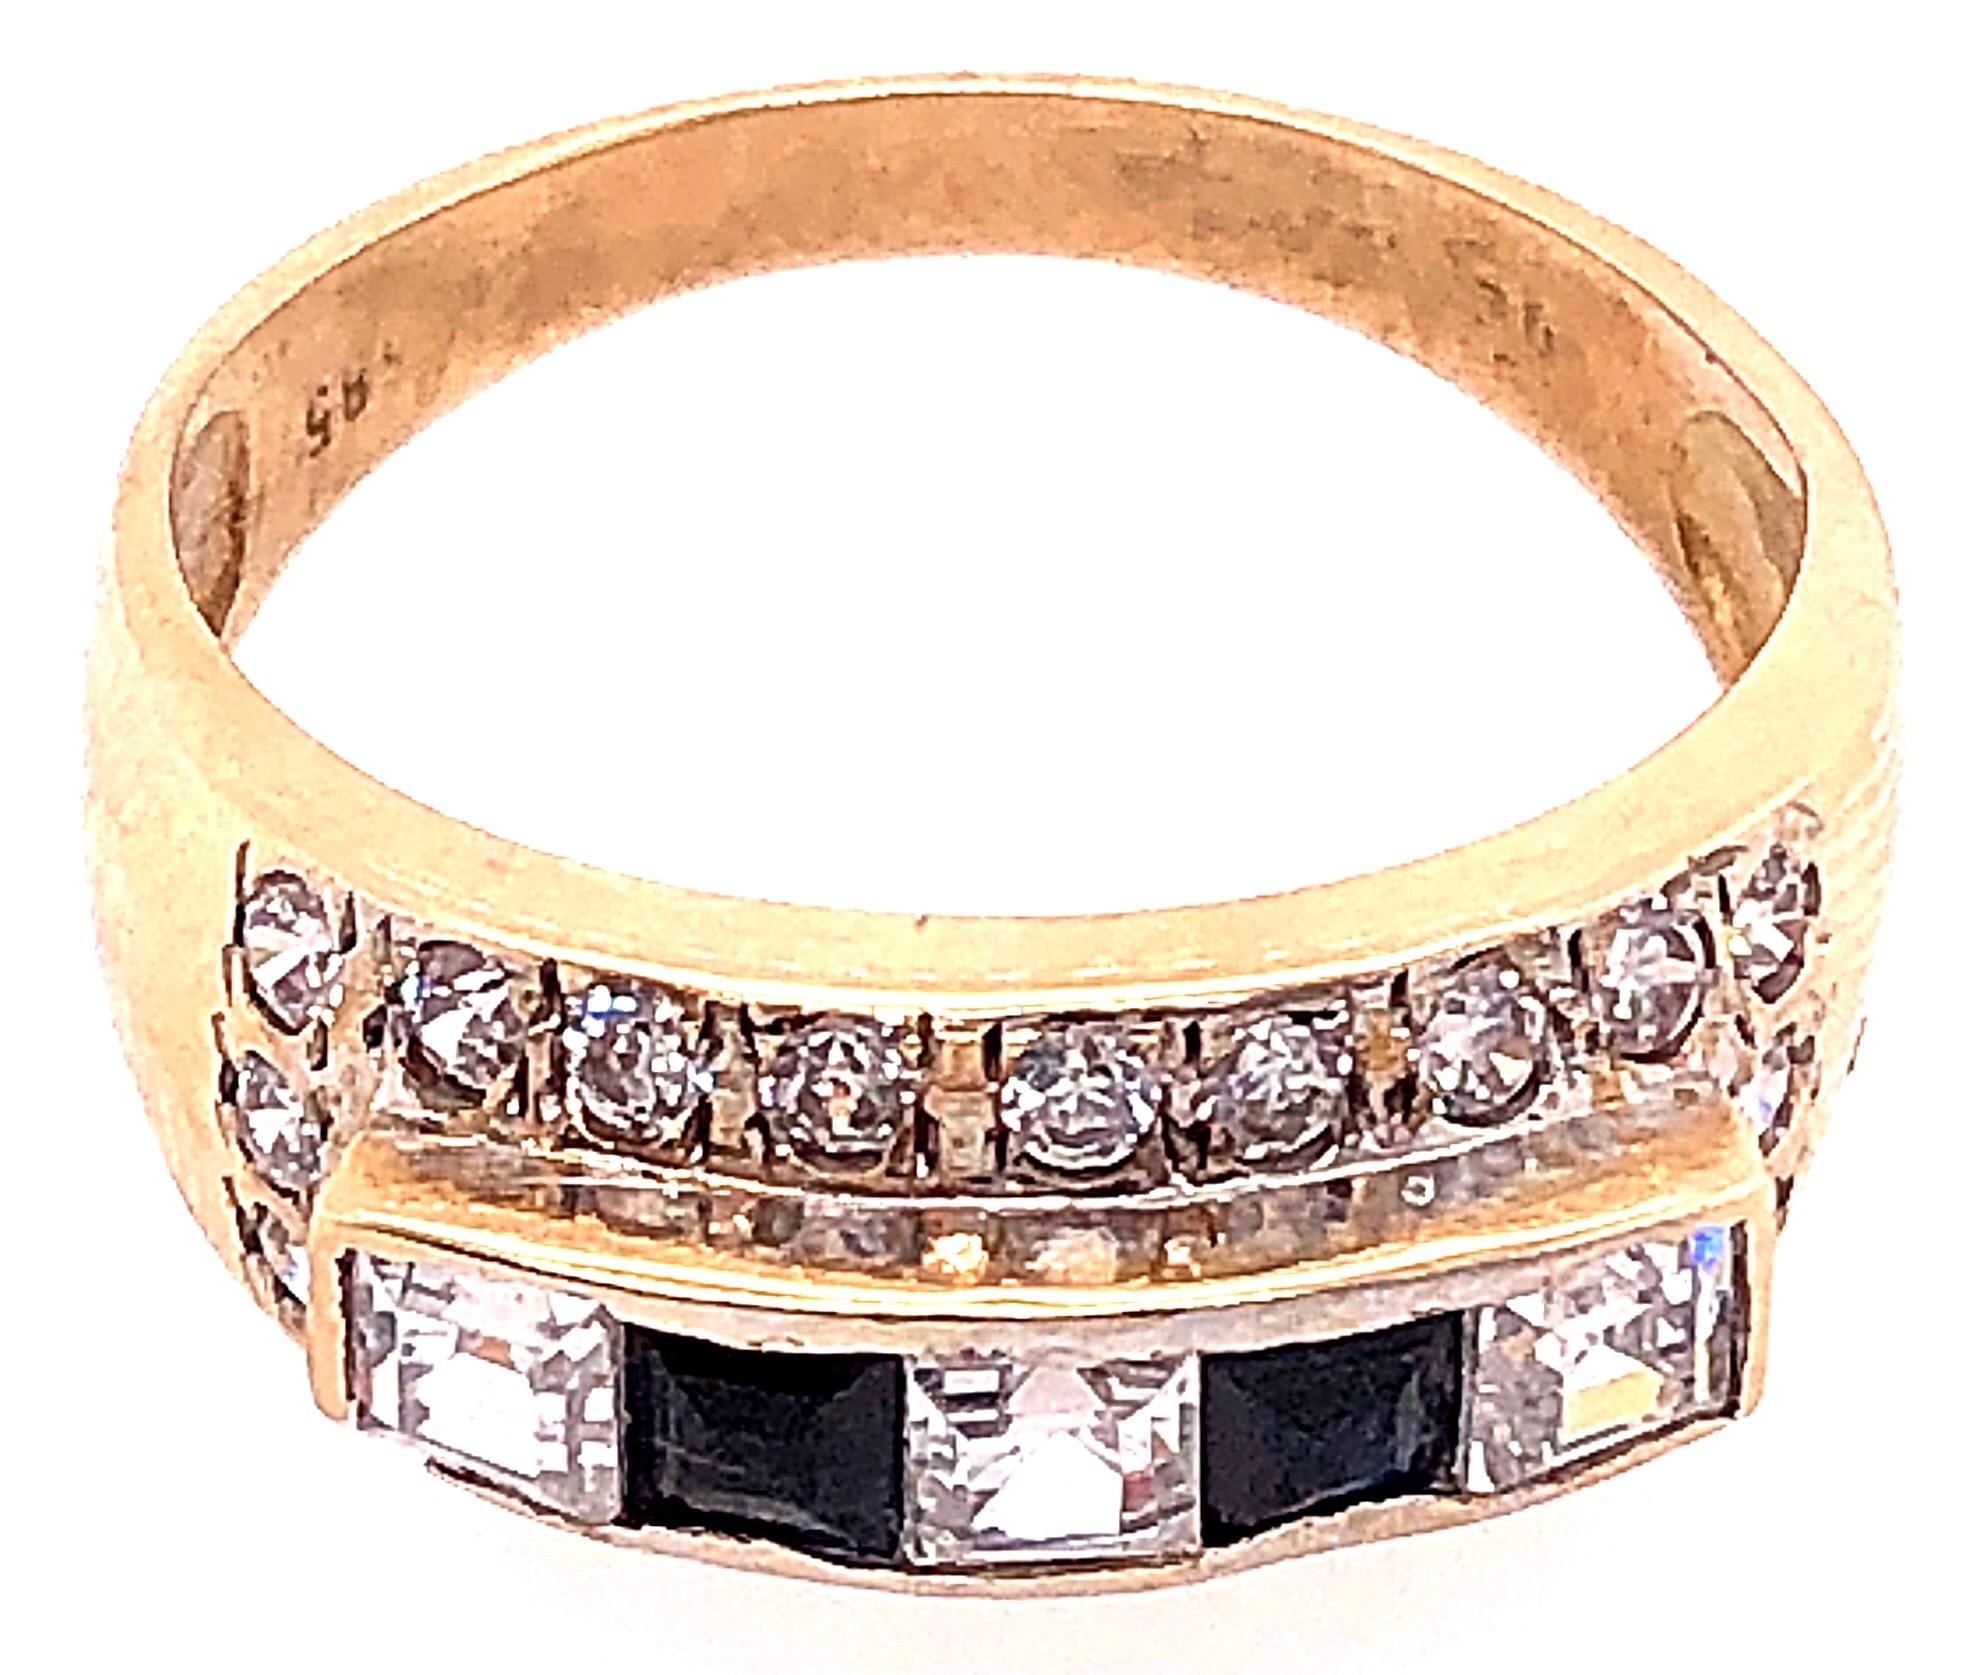 14 Karat Gelbgold Fashion Ring mit Onyx und runden Diamanten.
2 Stück Onyx im Quadratschliff
20 Stück runde Diamanten mit einem Gesamtgewicht von 1,00 Diamanten.
3 Stück quadratisch geschliffene Diamanten mit einem Gesamtgewicht von 0,50